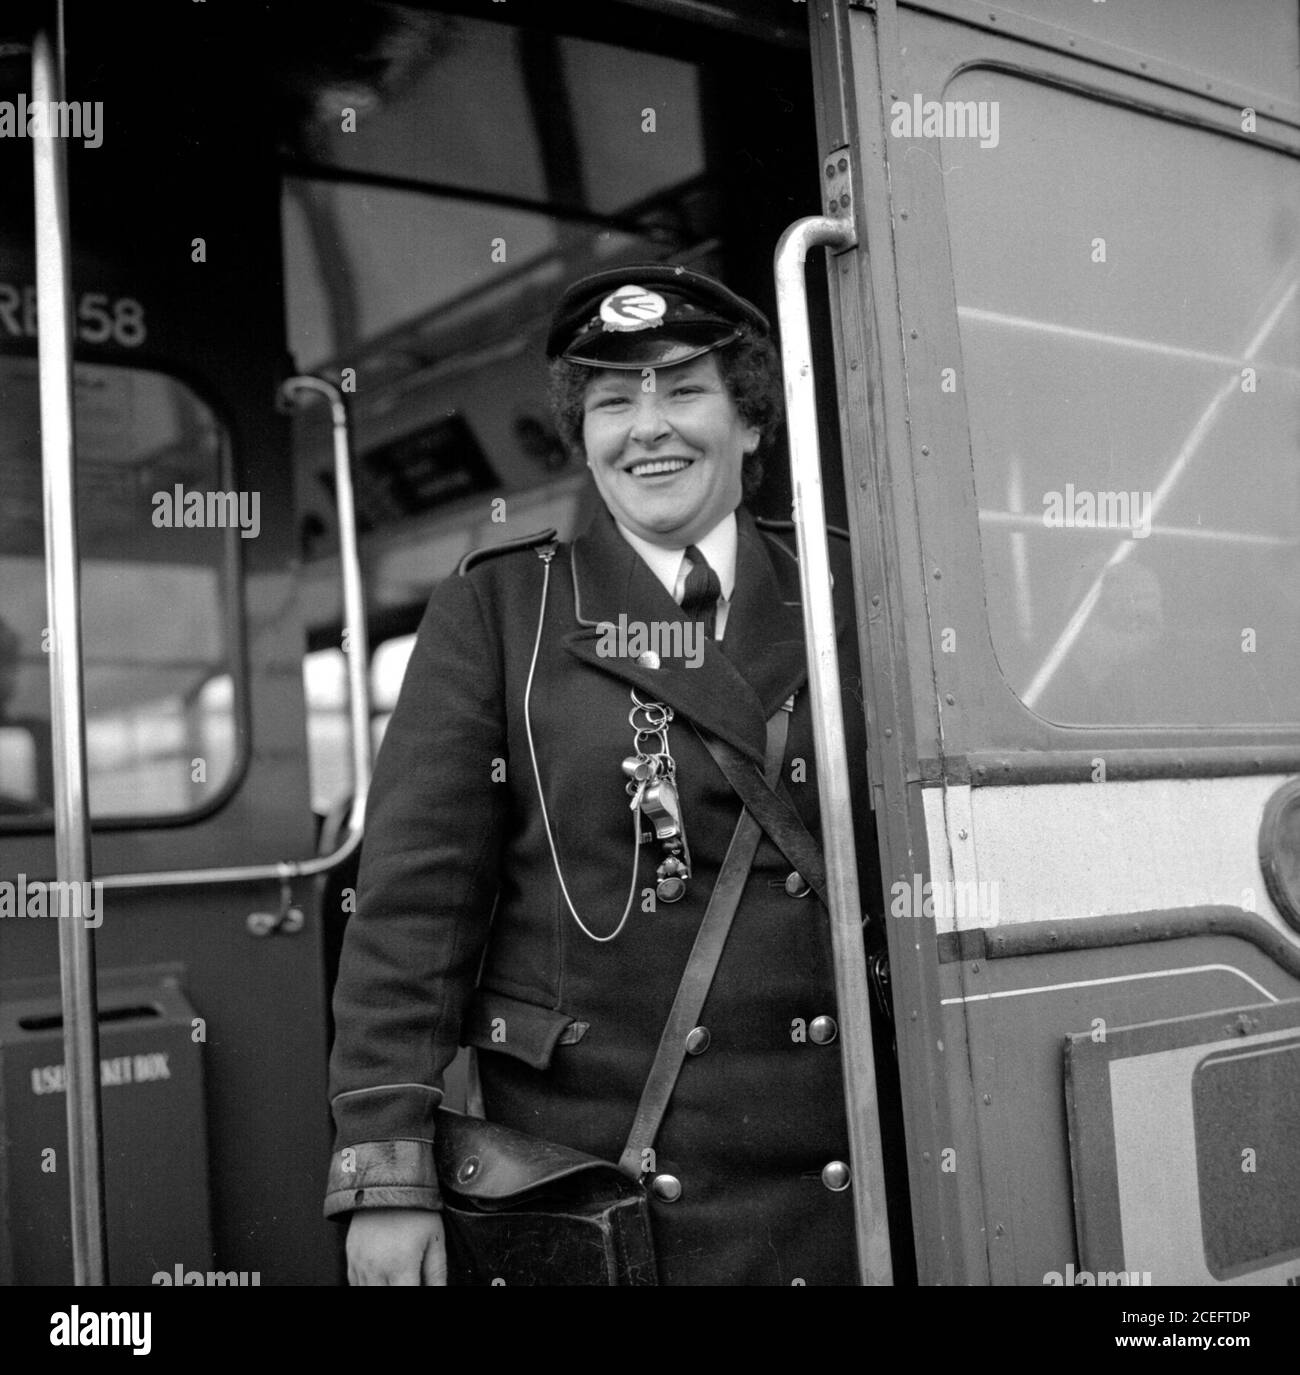 Eine Busleiterin in Fife, Schottland, lächelt, als sie in den 1950er Jahren hinter ihrem routemaster-Bus steht, bevor sie die Glocke läutet, um zu signalisieren, dass der Fahrer weiterfahren kann Stockfoto